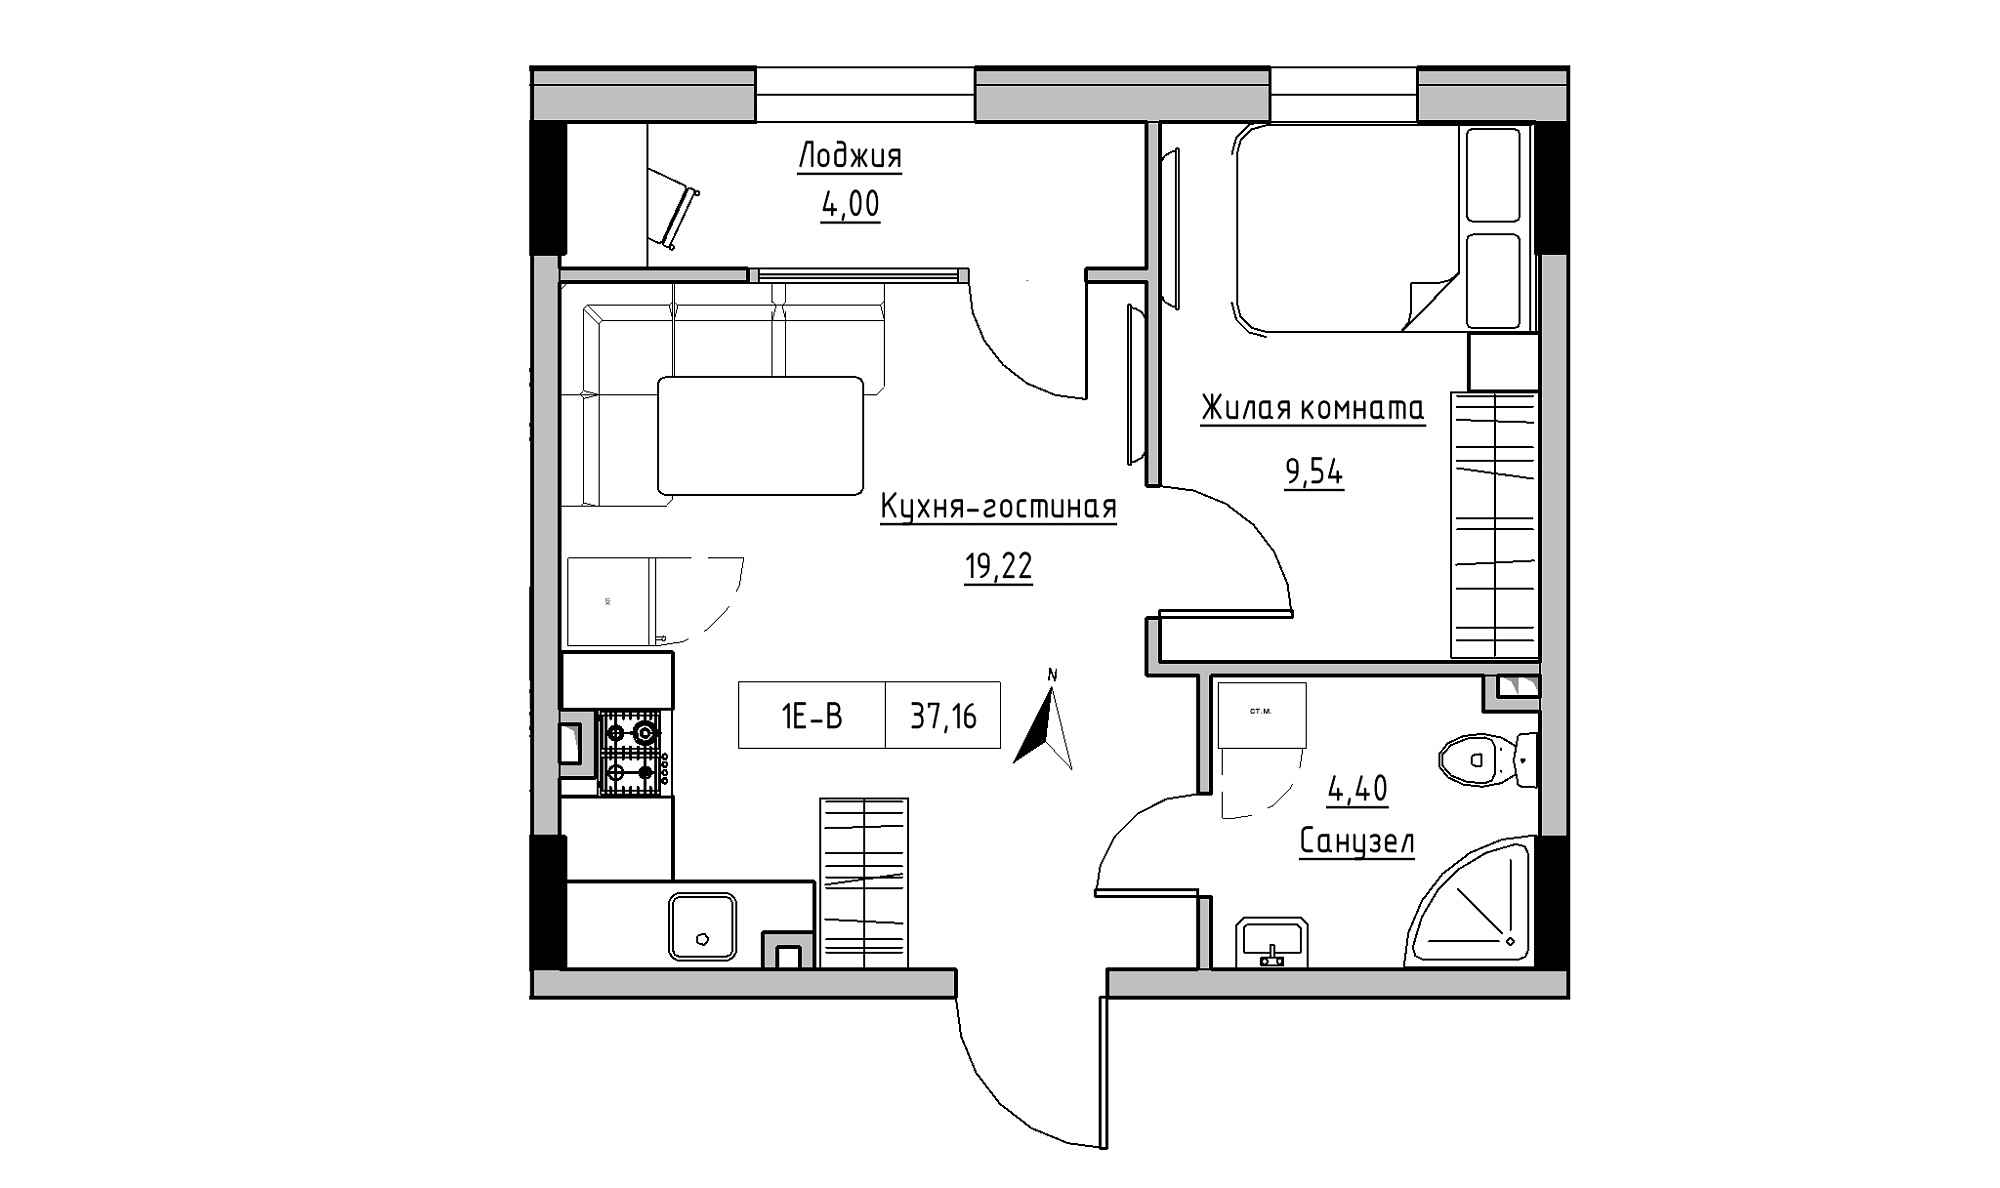 Планировка 1-к квартира площей 37.16м2, KS-025-01/0008.